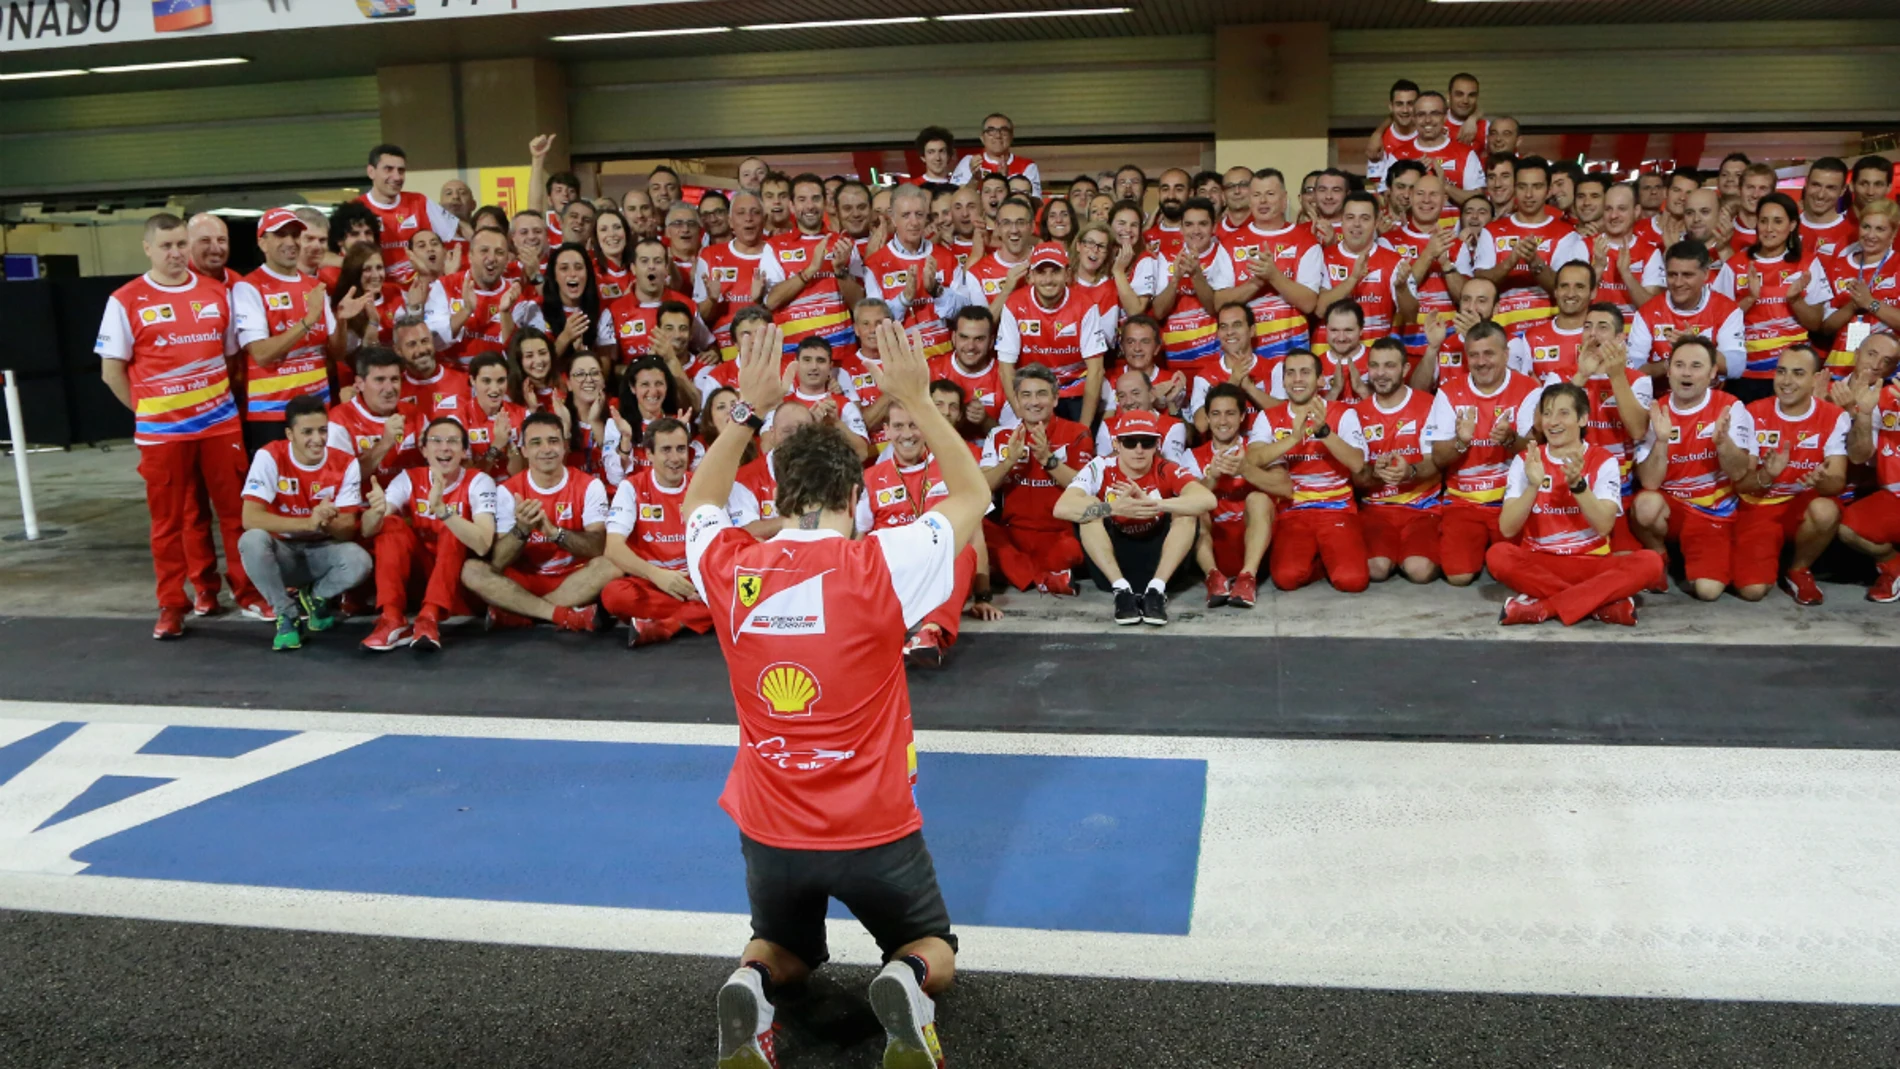 Alonso alaba al equipo Ferrari